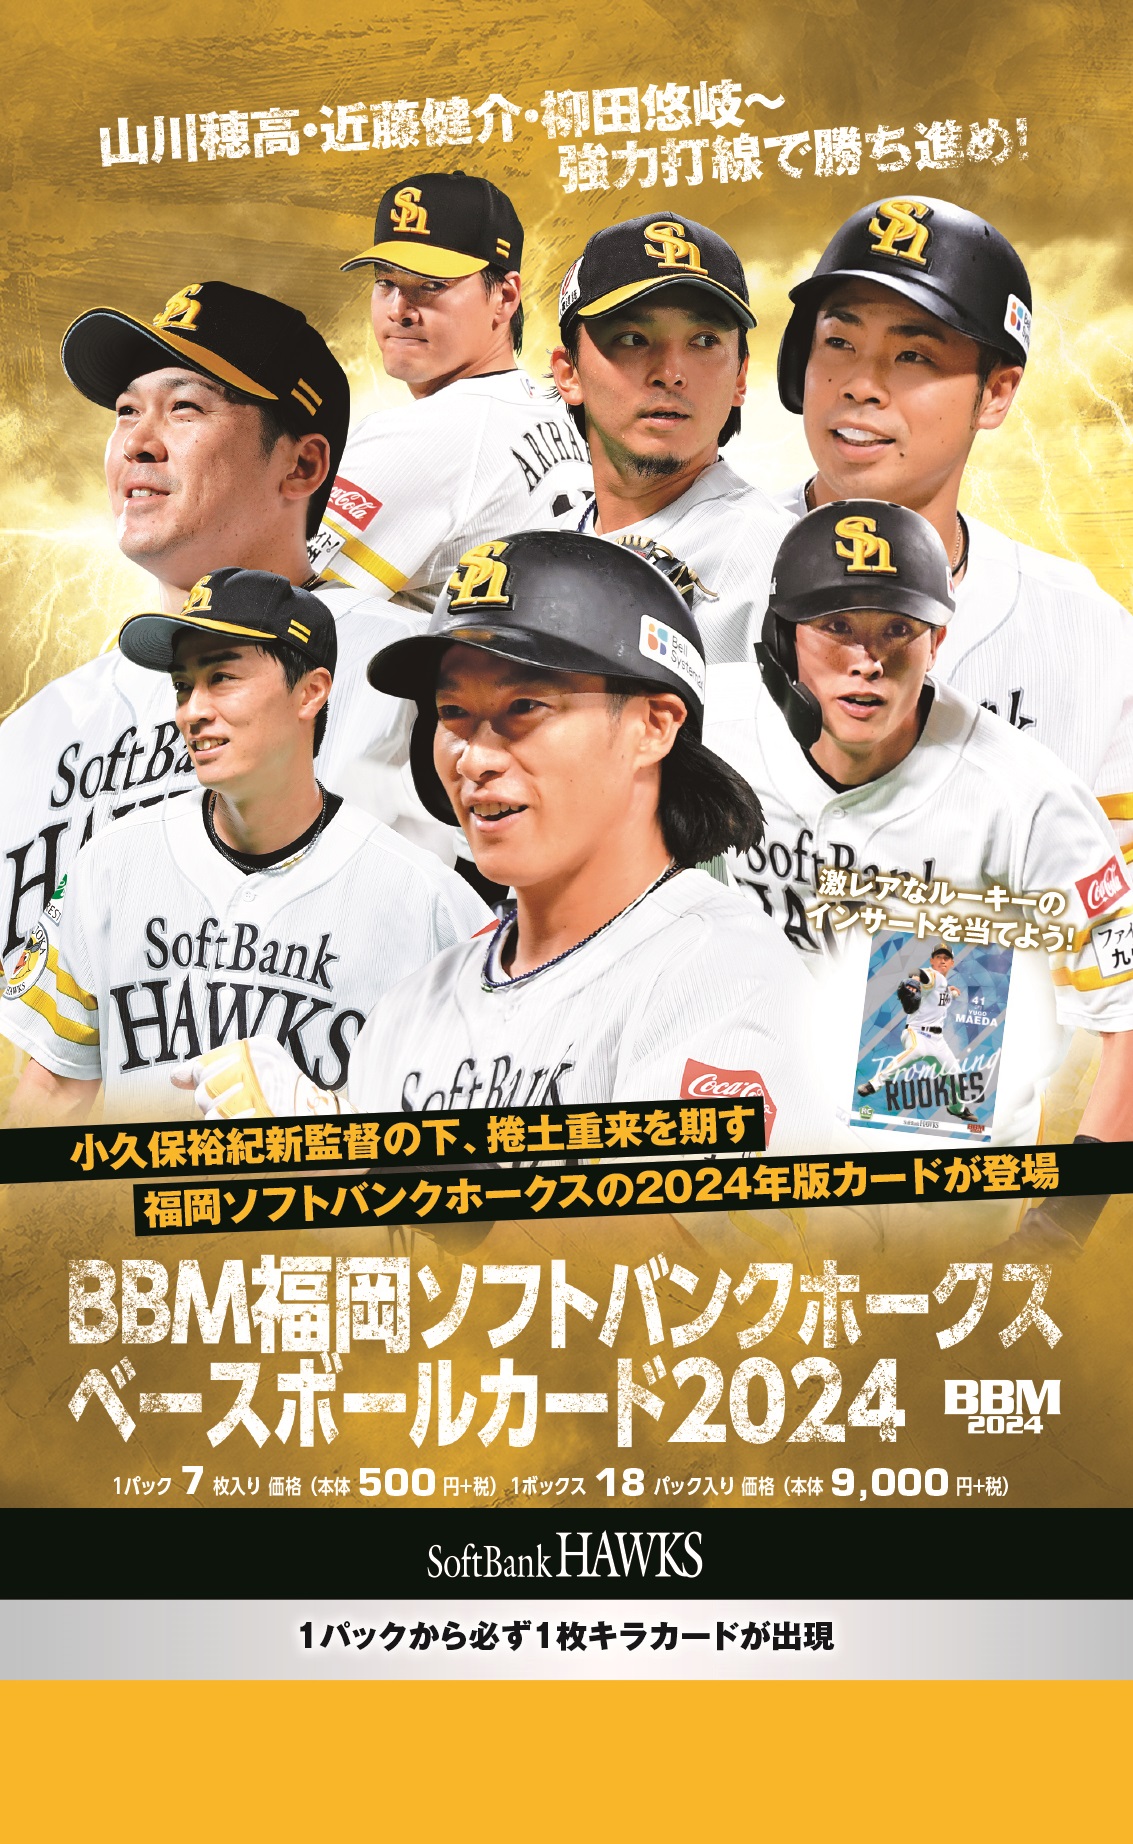 ⚾ BBM 福岡ソフトバンクホークス ベースボールカード 2024【製品情報 